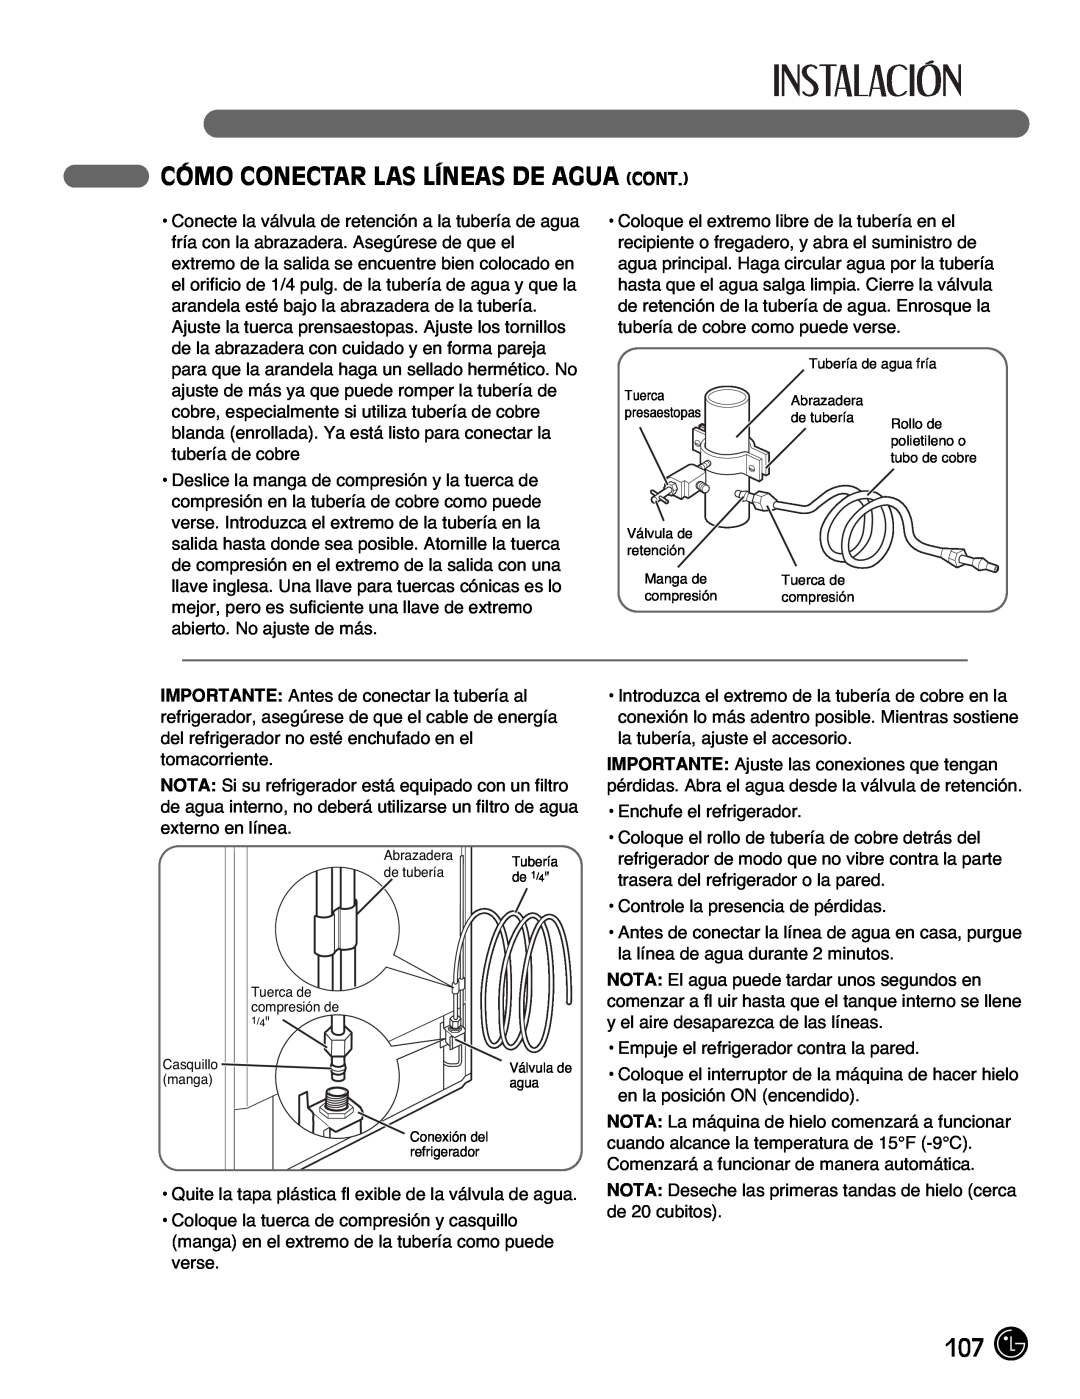 LG Electronics LMX21971, LMX25981**, LMX2525971, LMX21981** manual Cómo Conectar Las Líneas De Agua Cont 